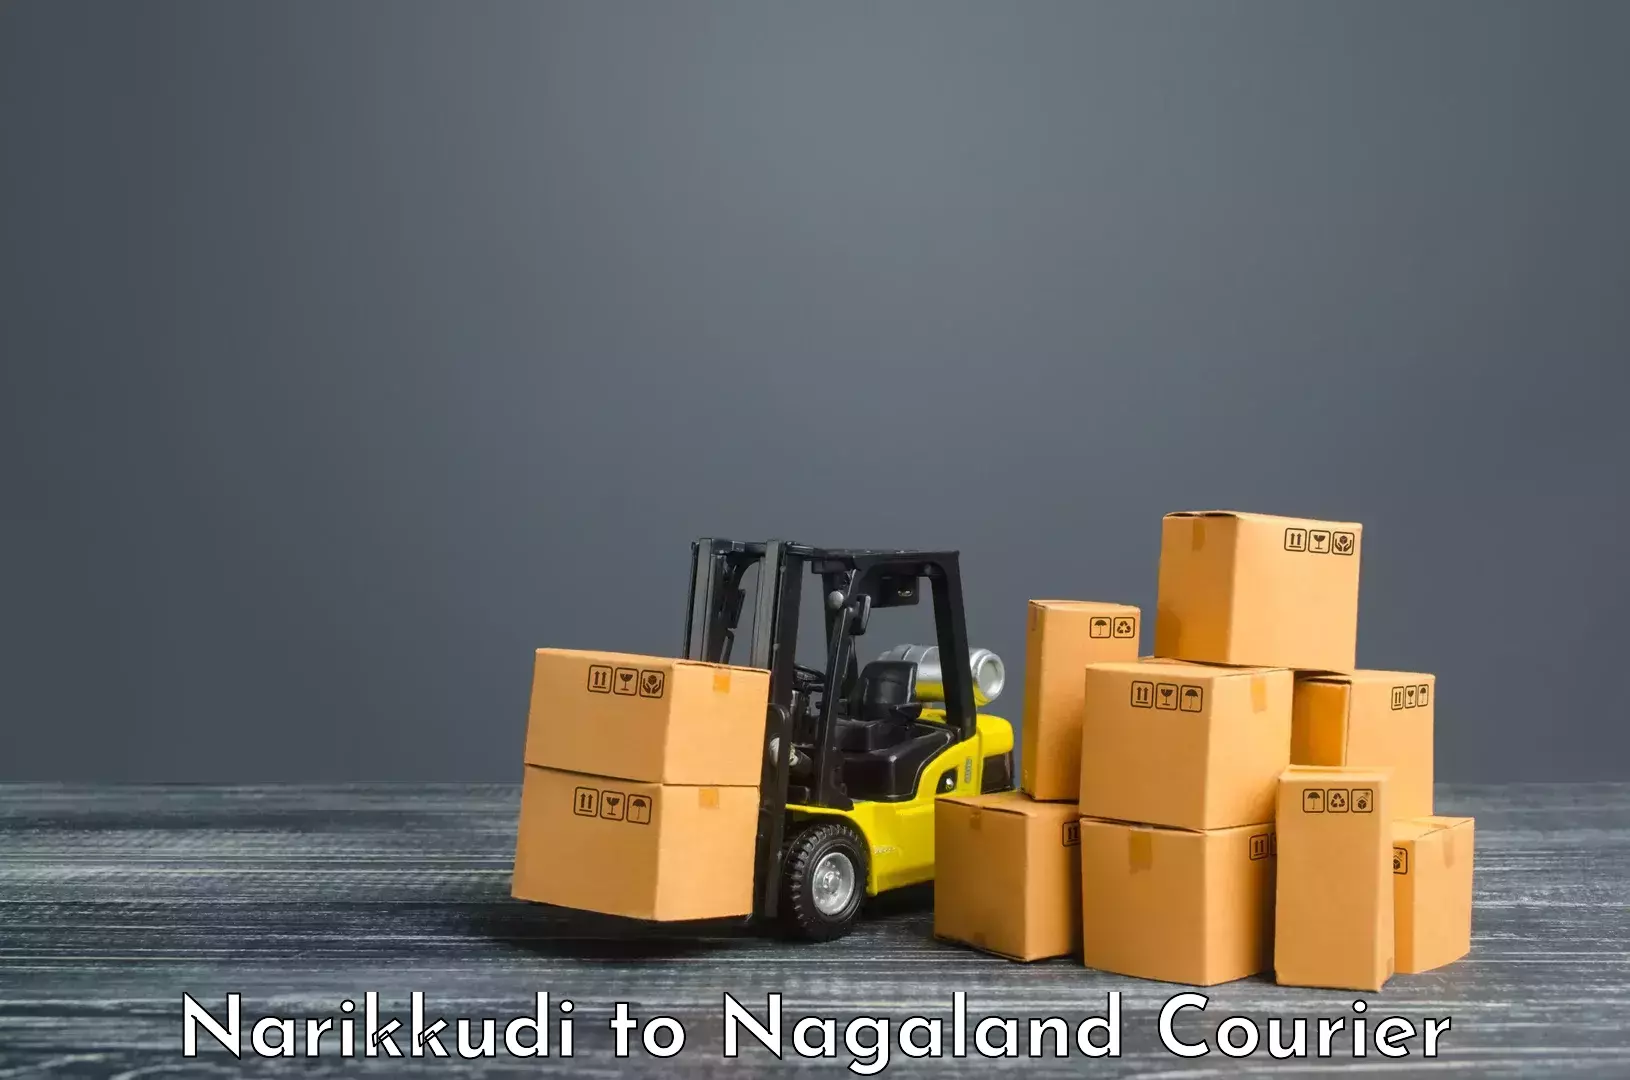 On-call courier service Narikkudi to Wokha